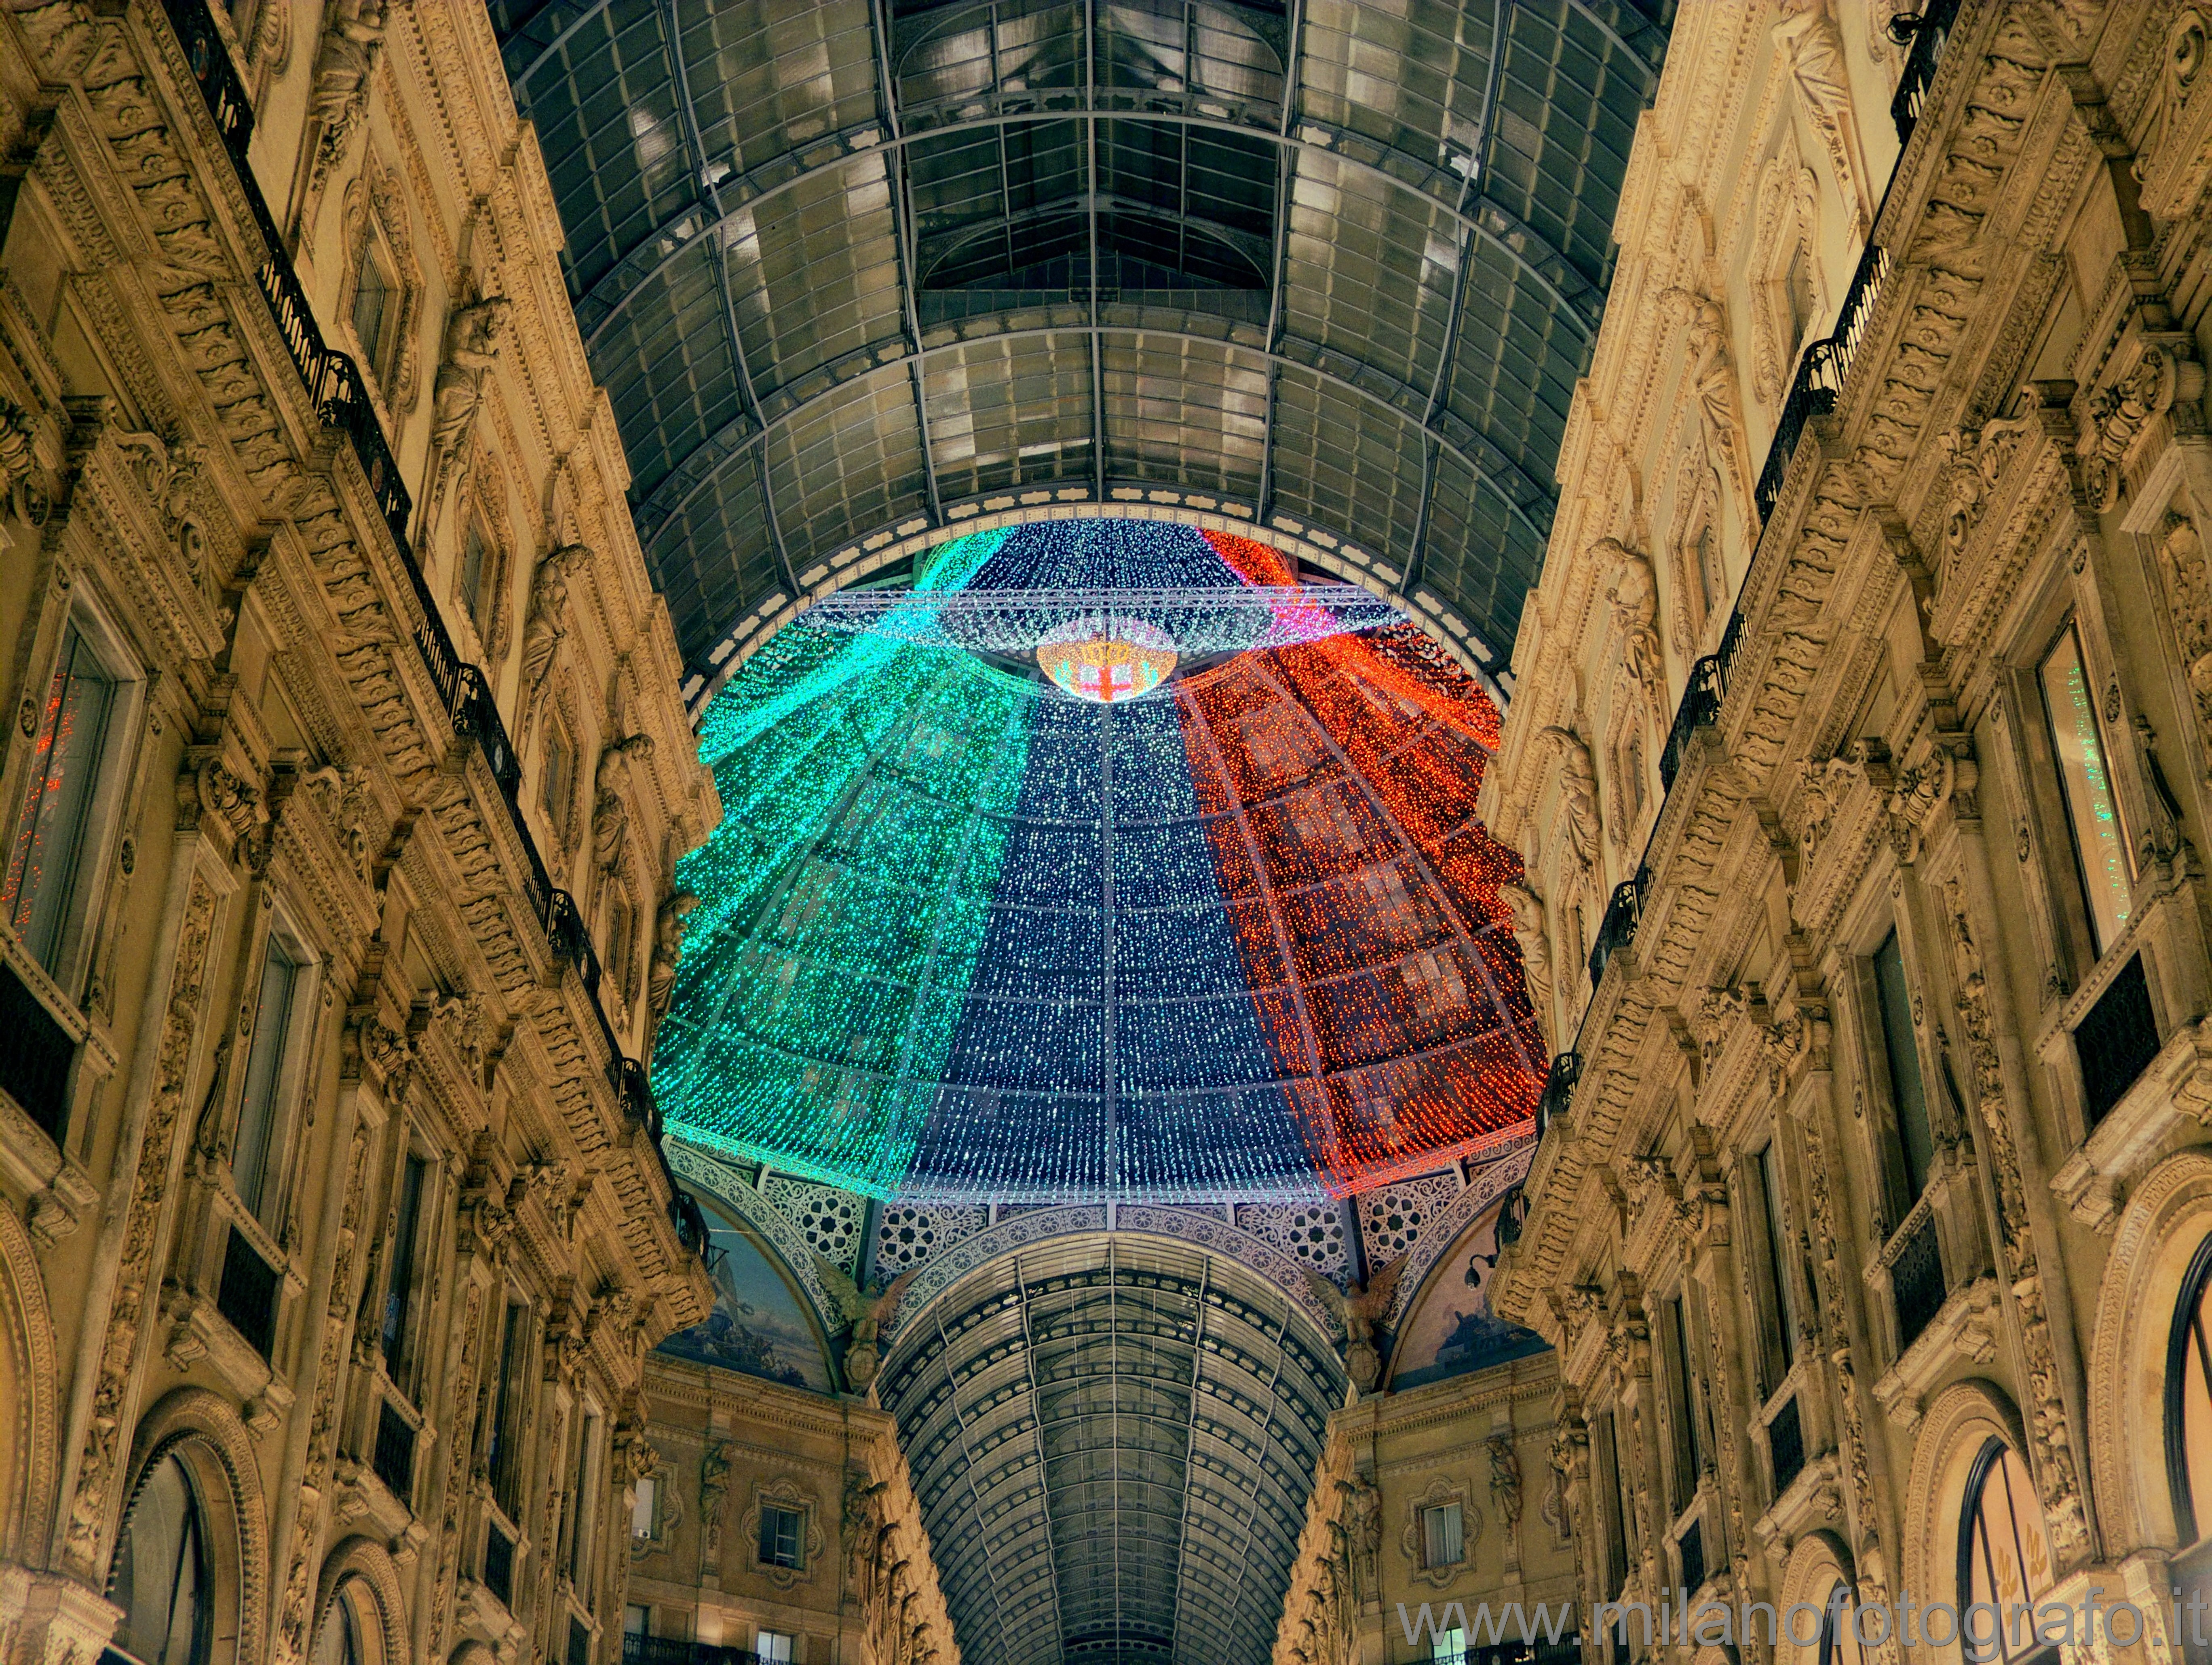 Milano: Cupola della Galleria decorata con i colori italiani - Milano